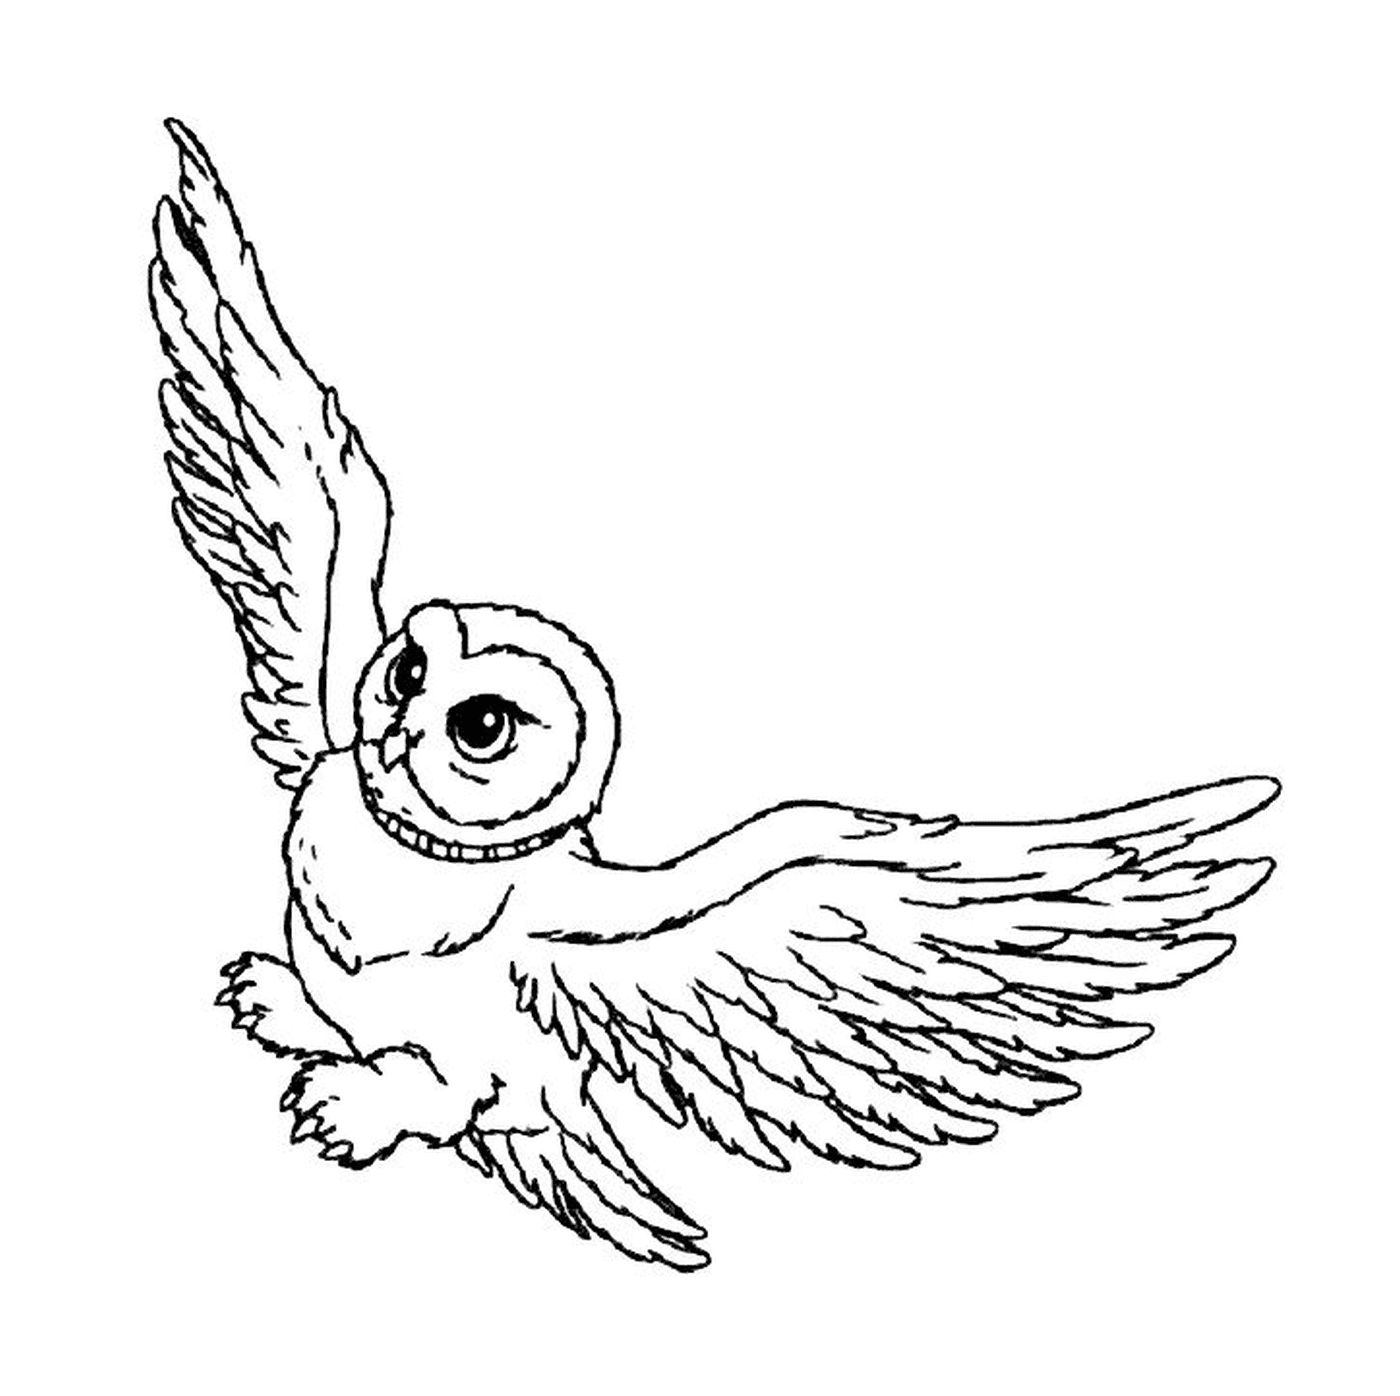  Hedwige fliegt am Himmel 